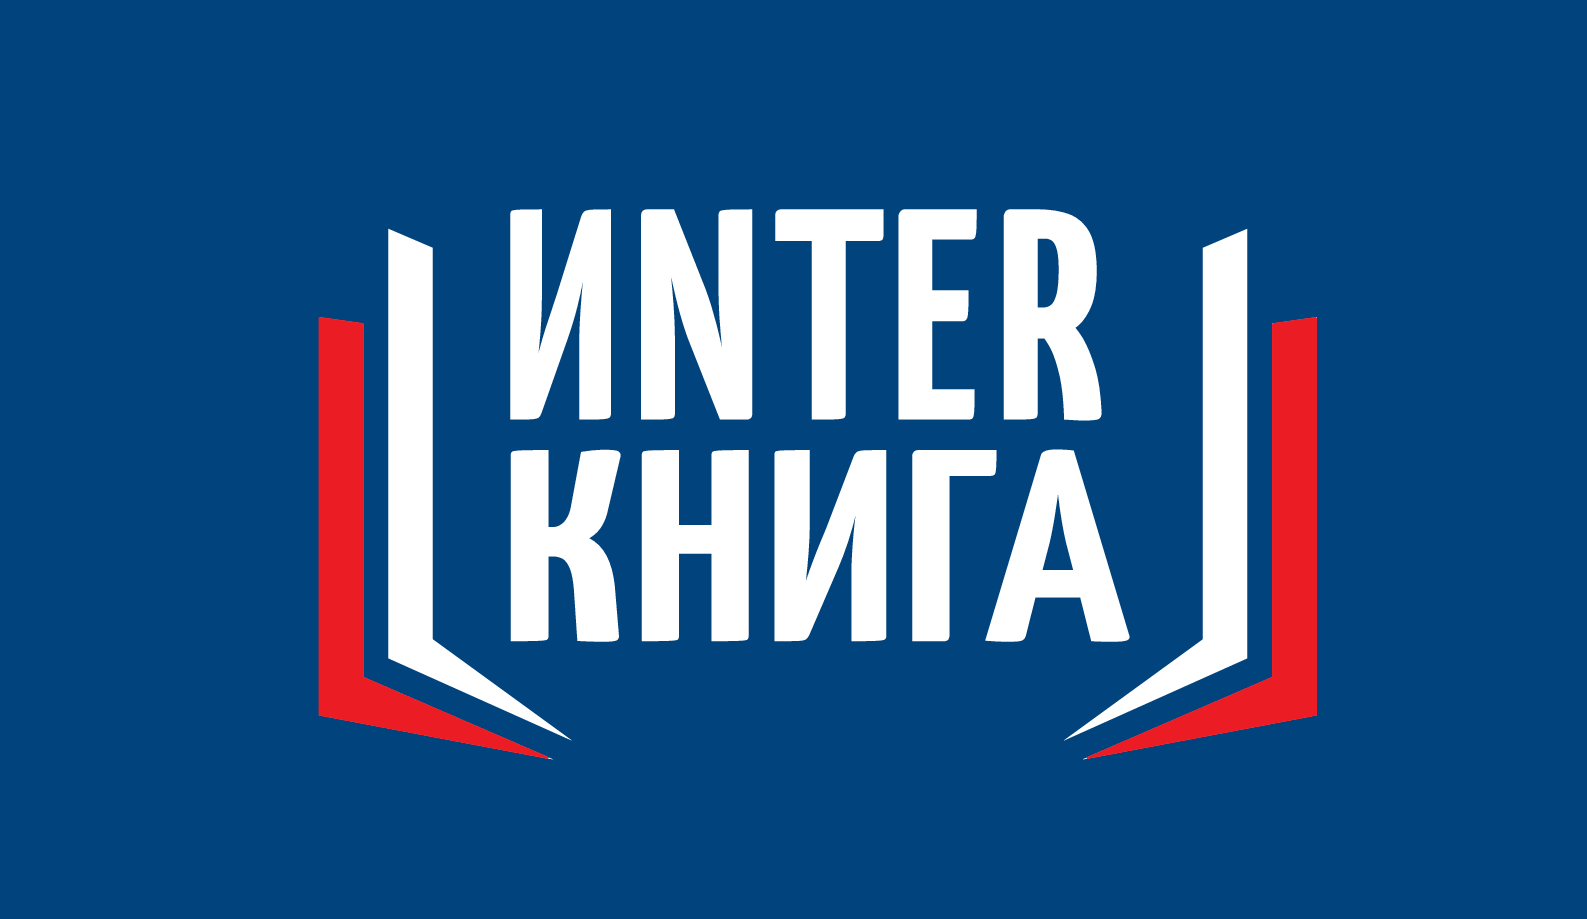 Interkniga logo